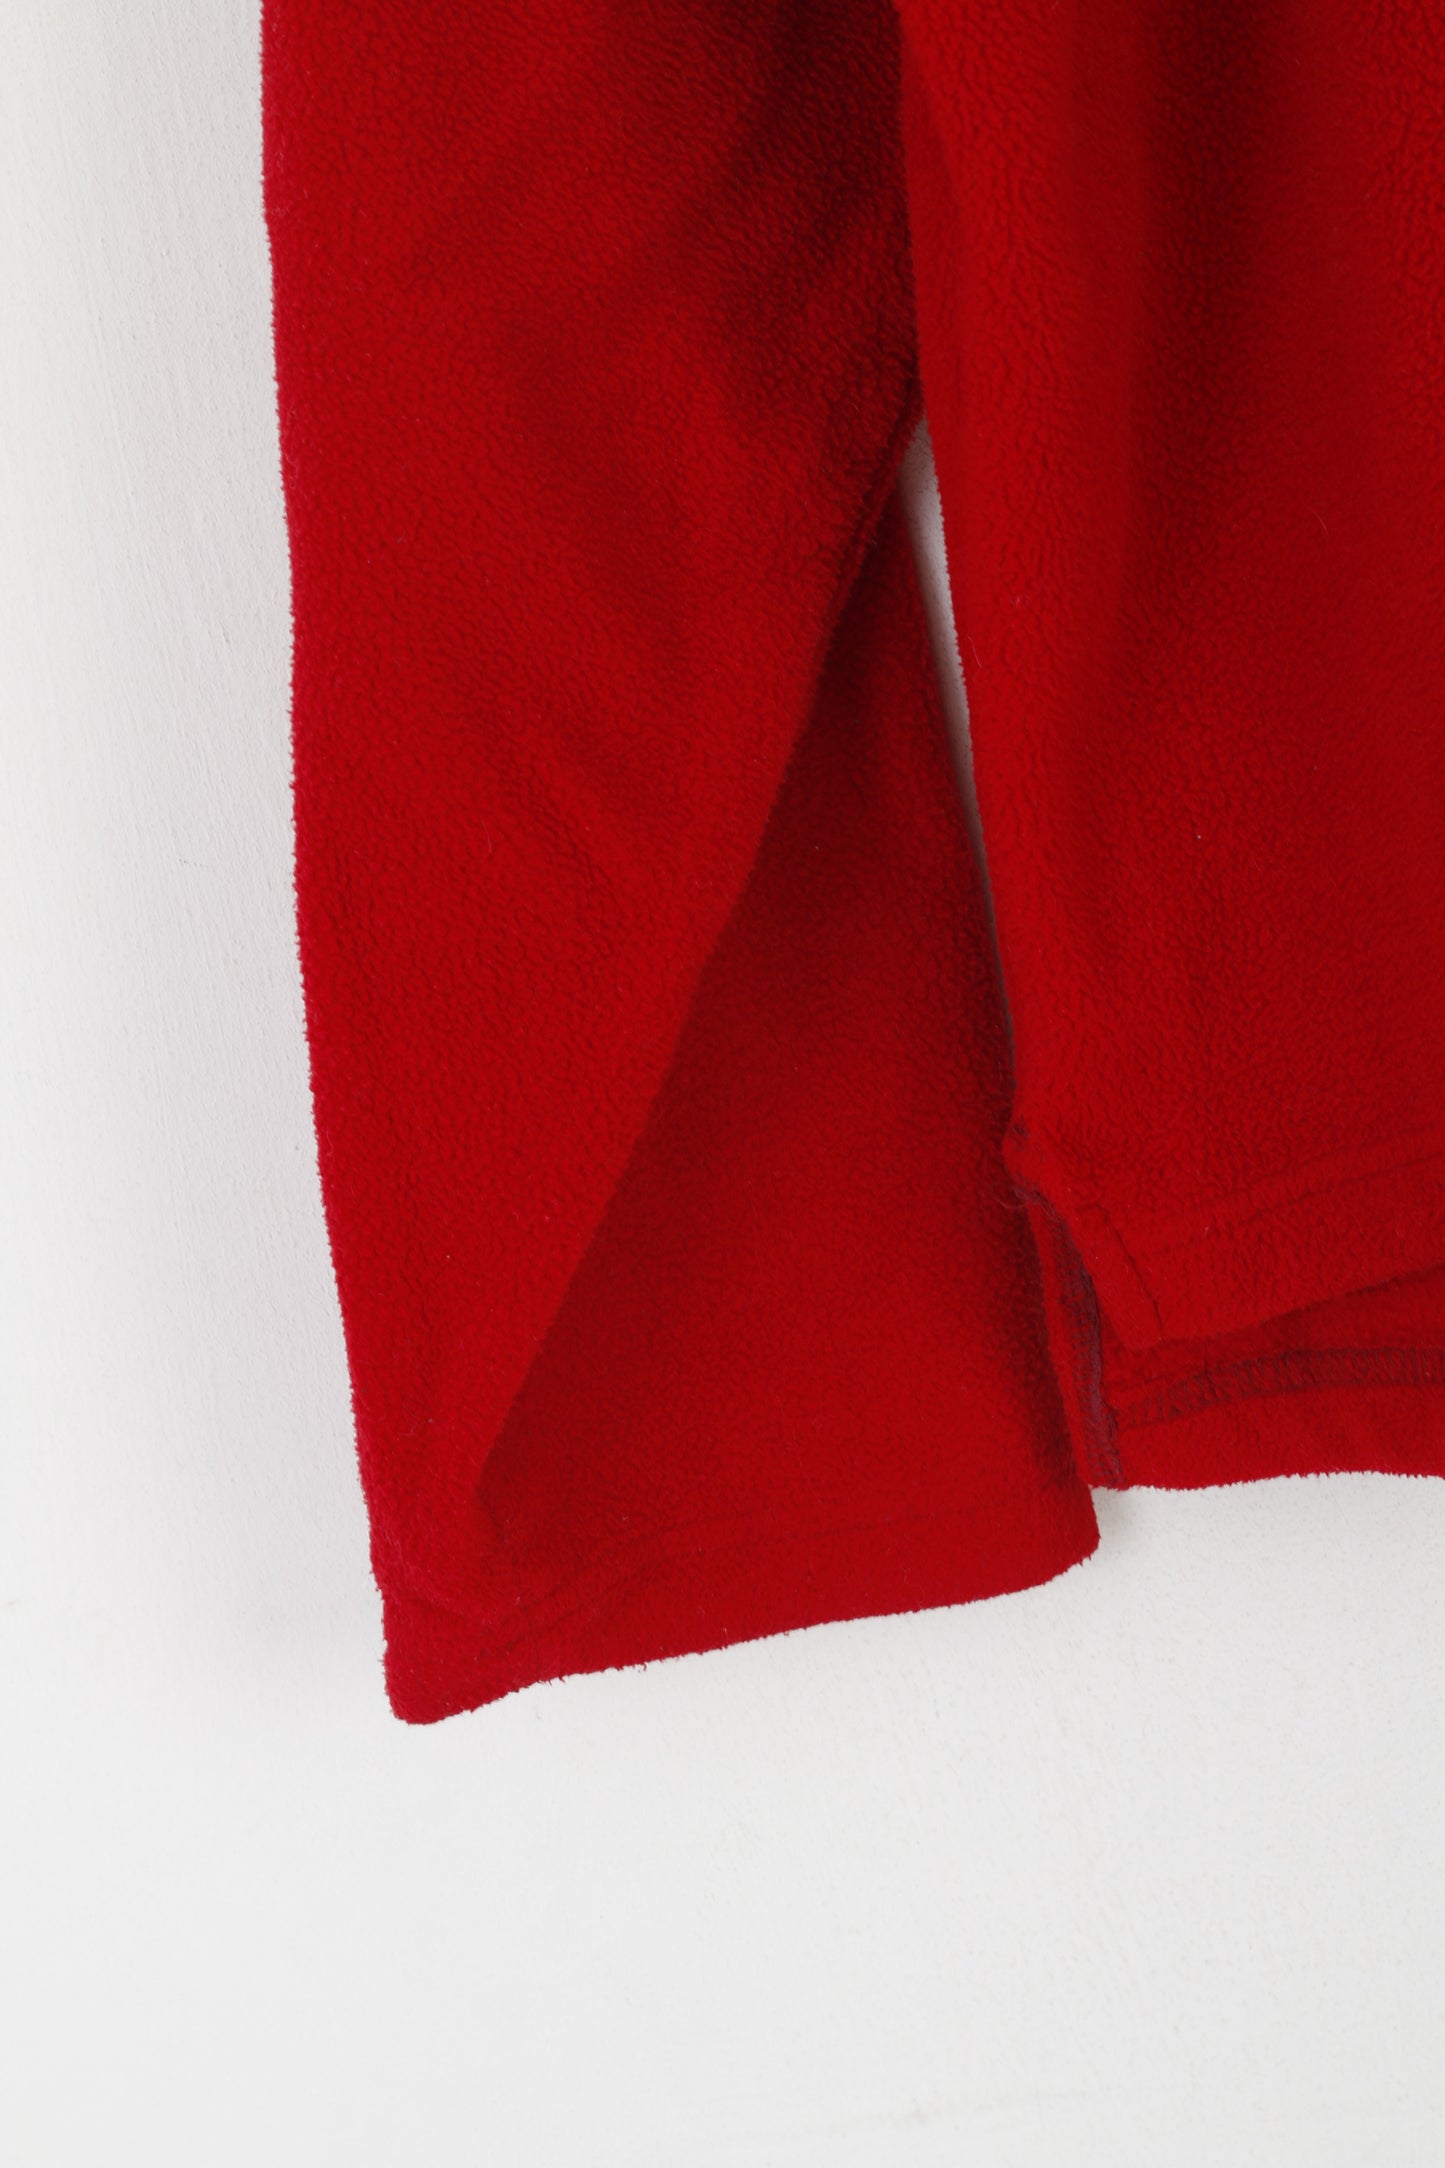 Sprayway Men XL Fleece Top Red Vintage Zip Neck Outdoor Sweateshirt